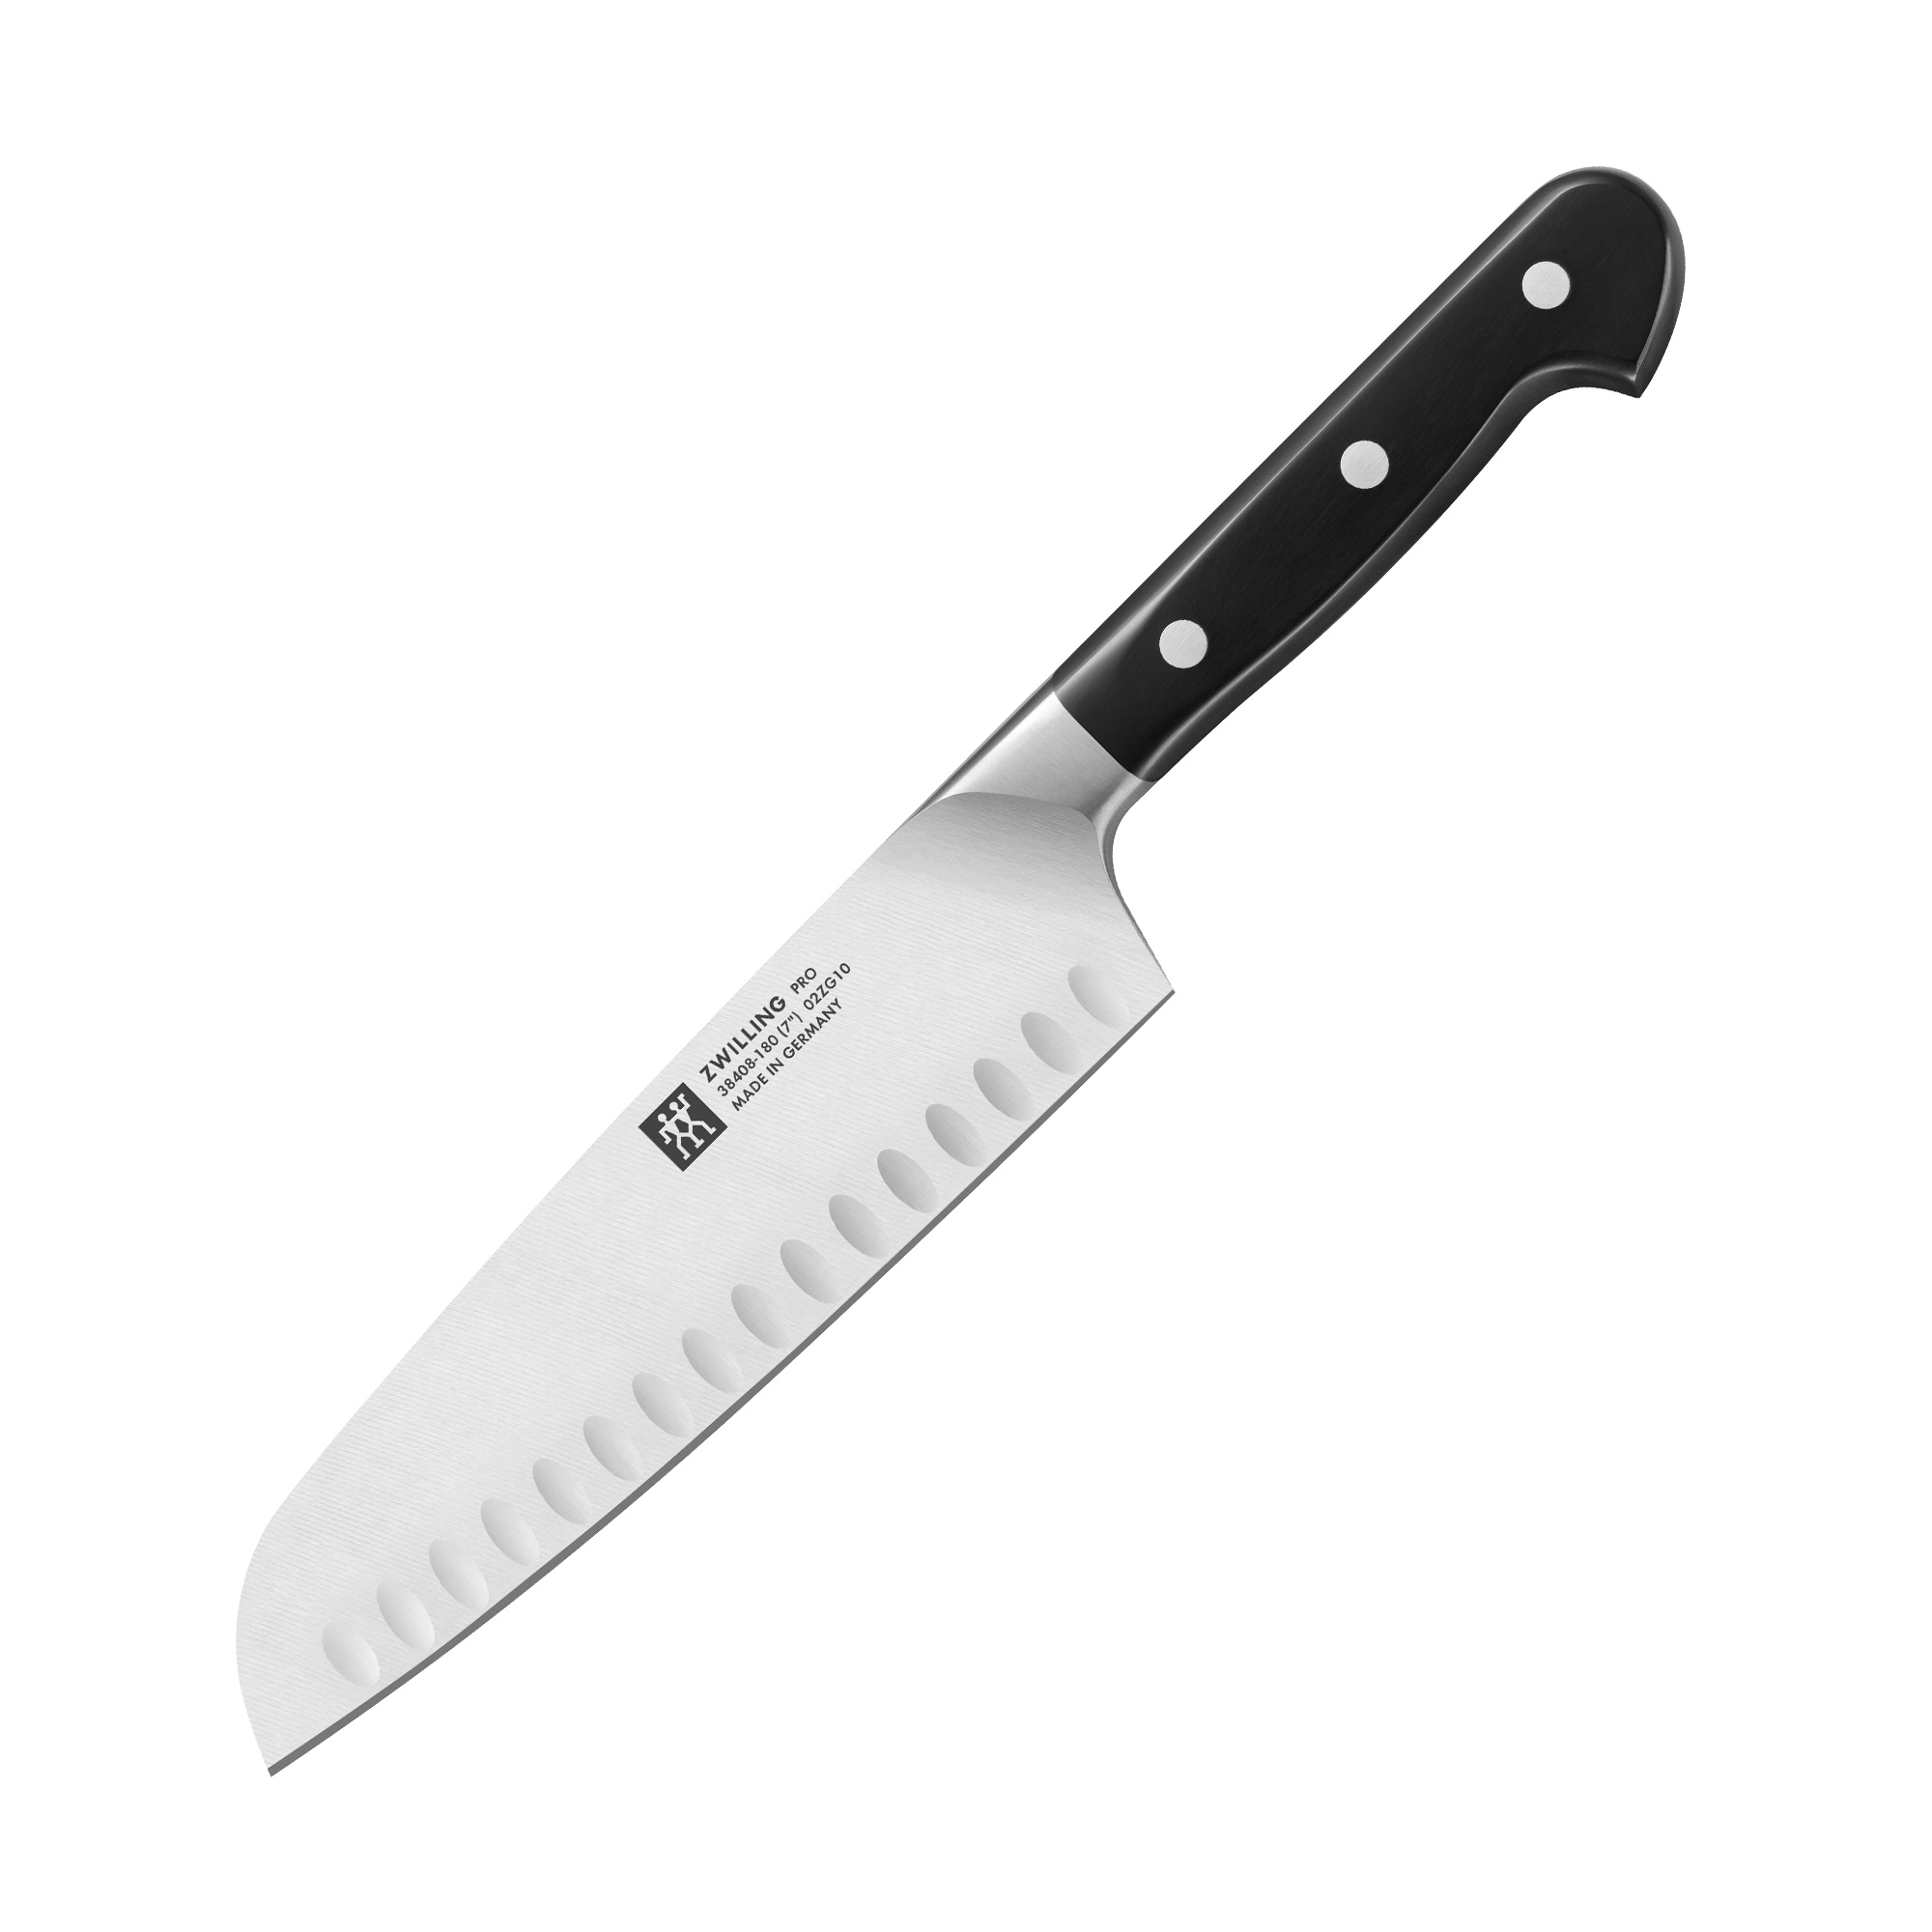 Zwilling - Pro - Santoku knife 18 cm